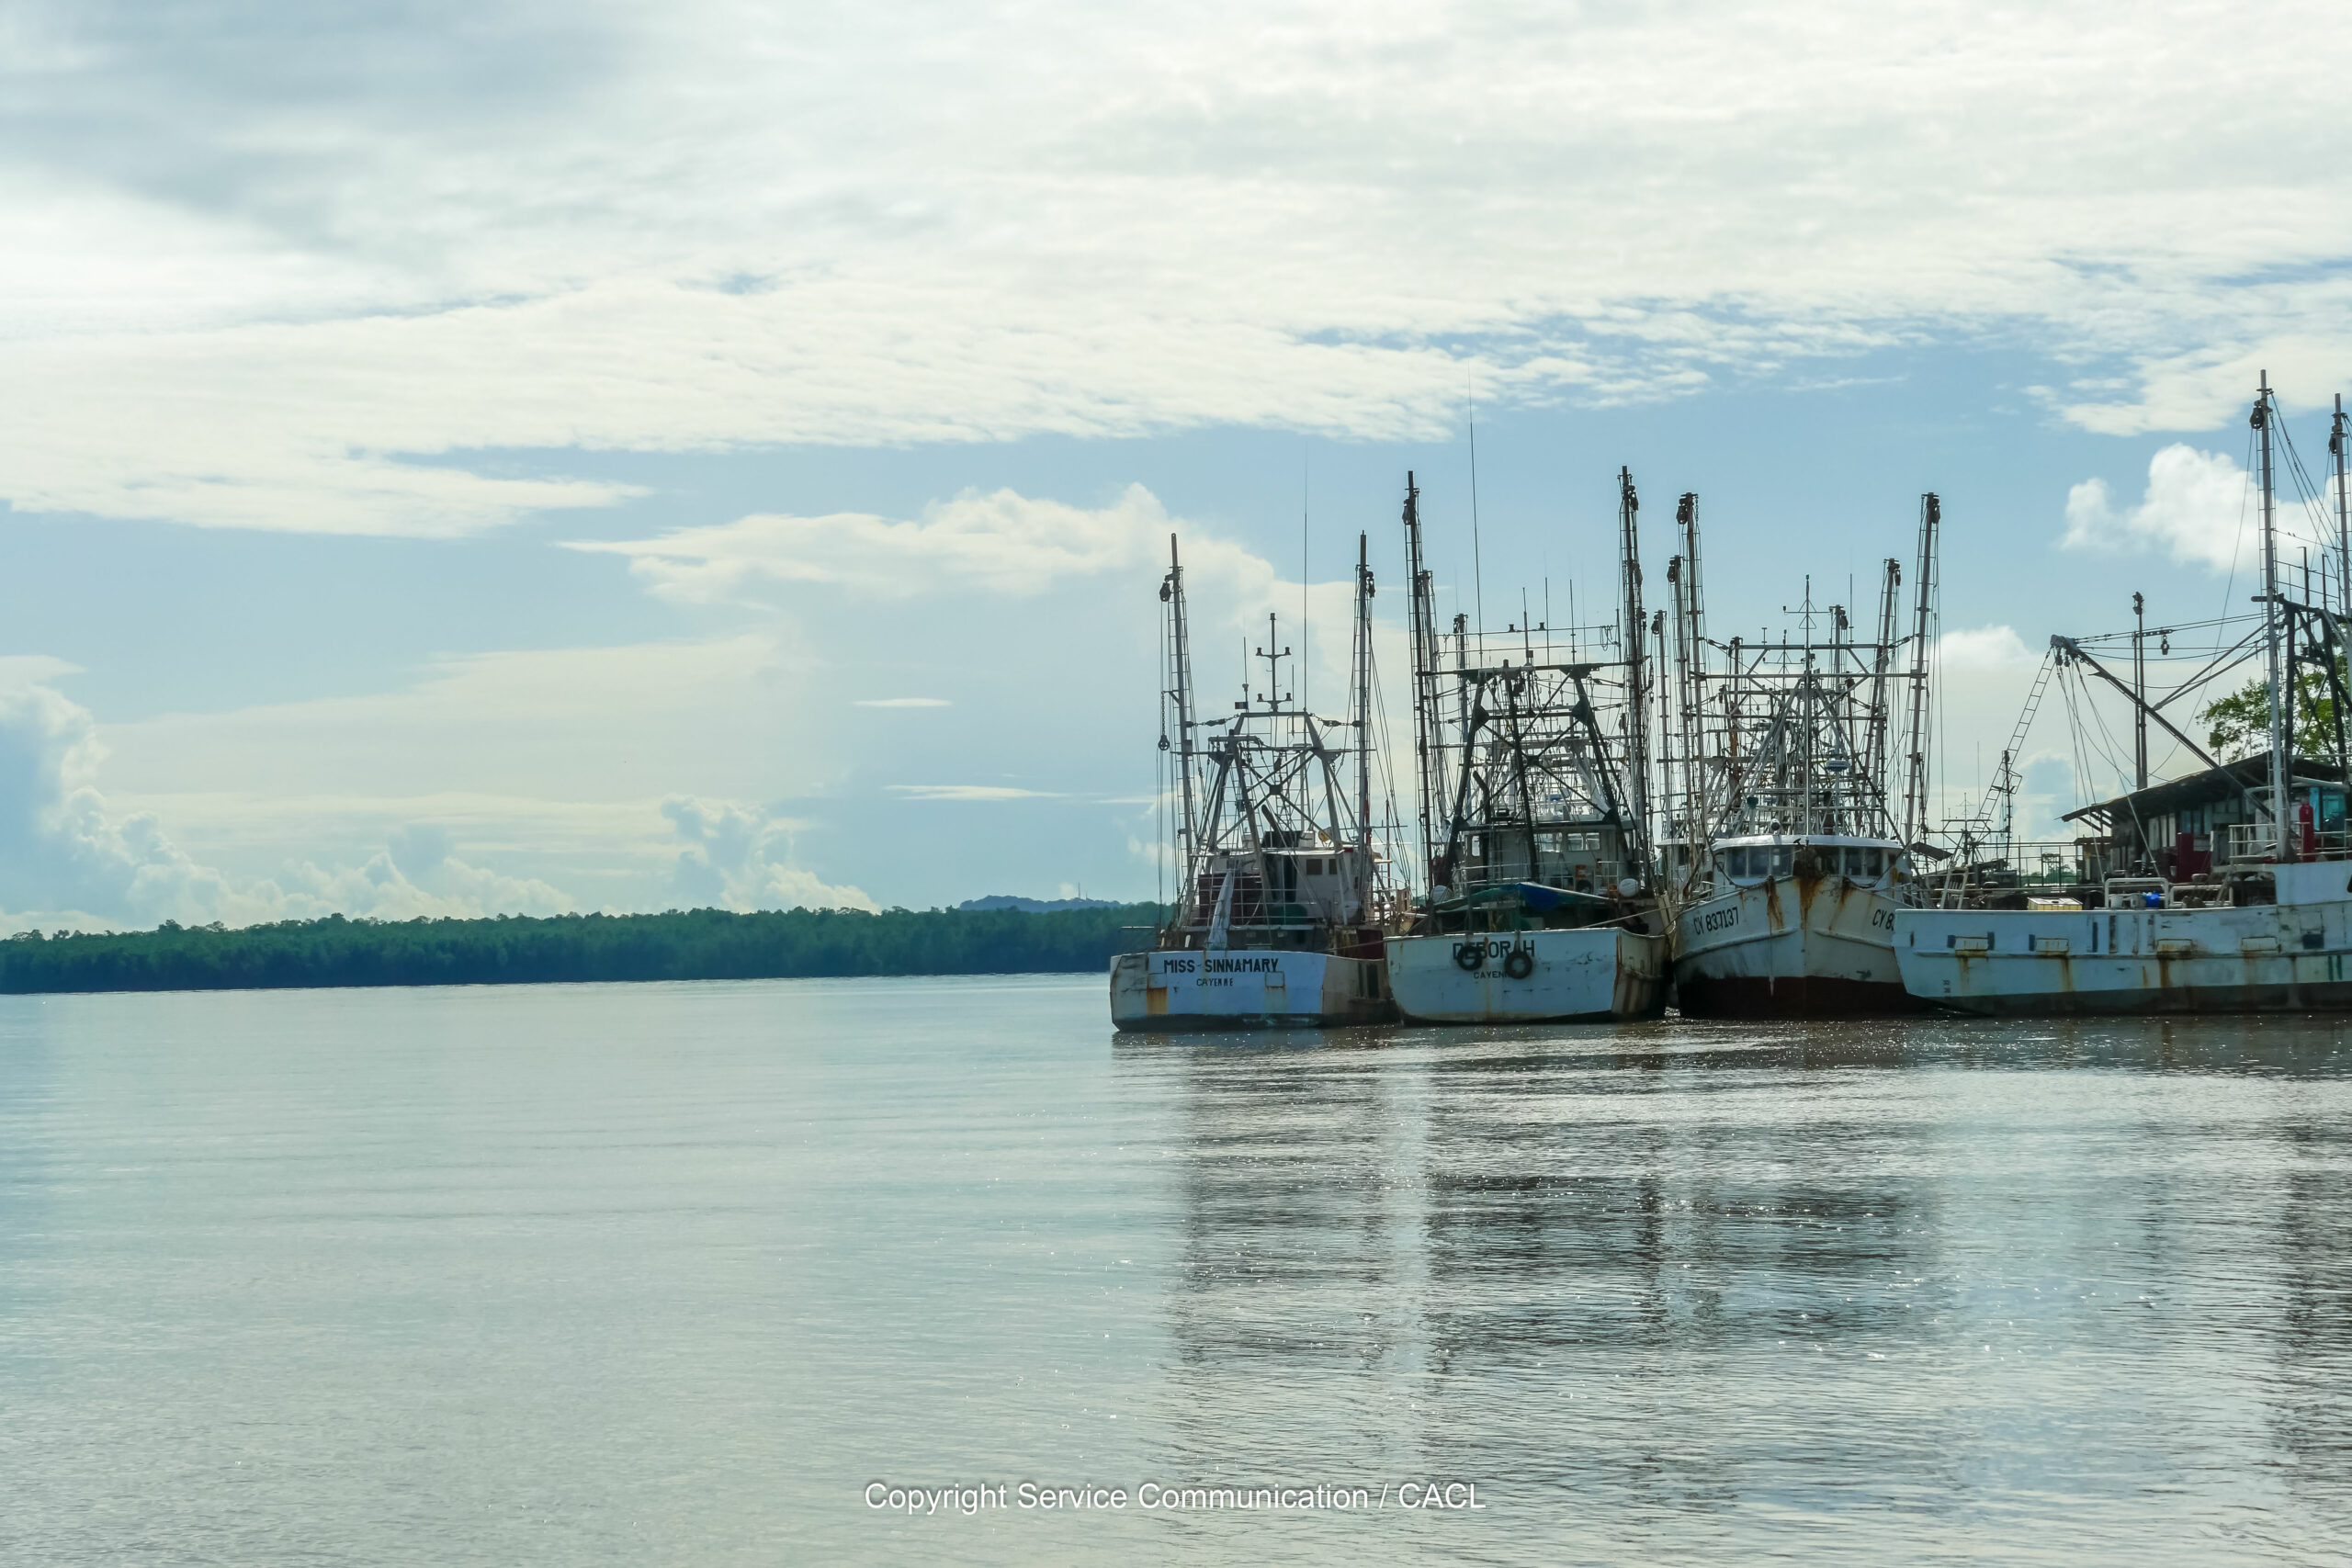 Les bateaux des pêcheurs guyanais sont tous équipés de filets TED, respectueux de la faune marine